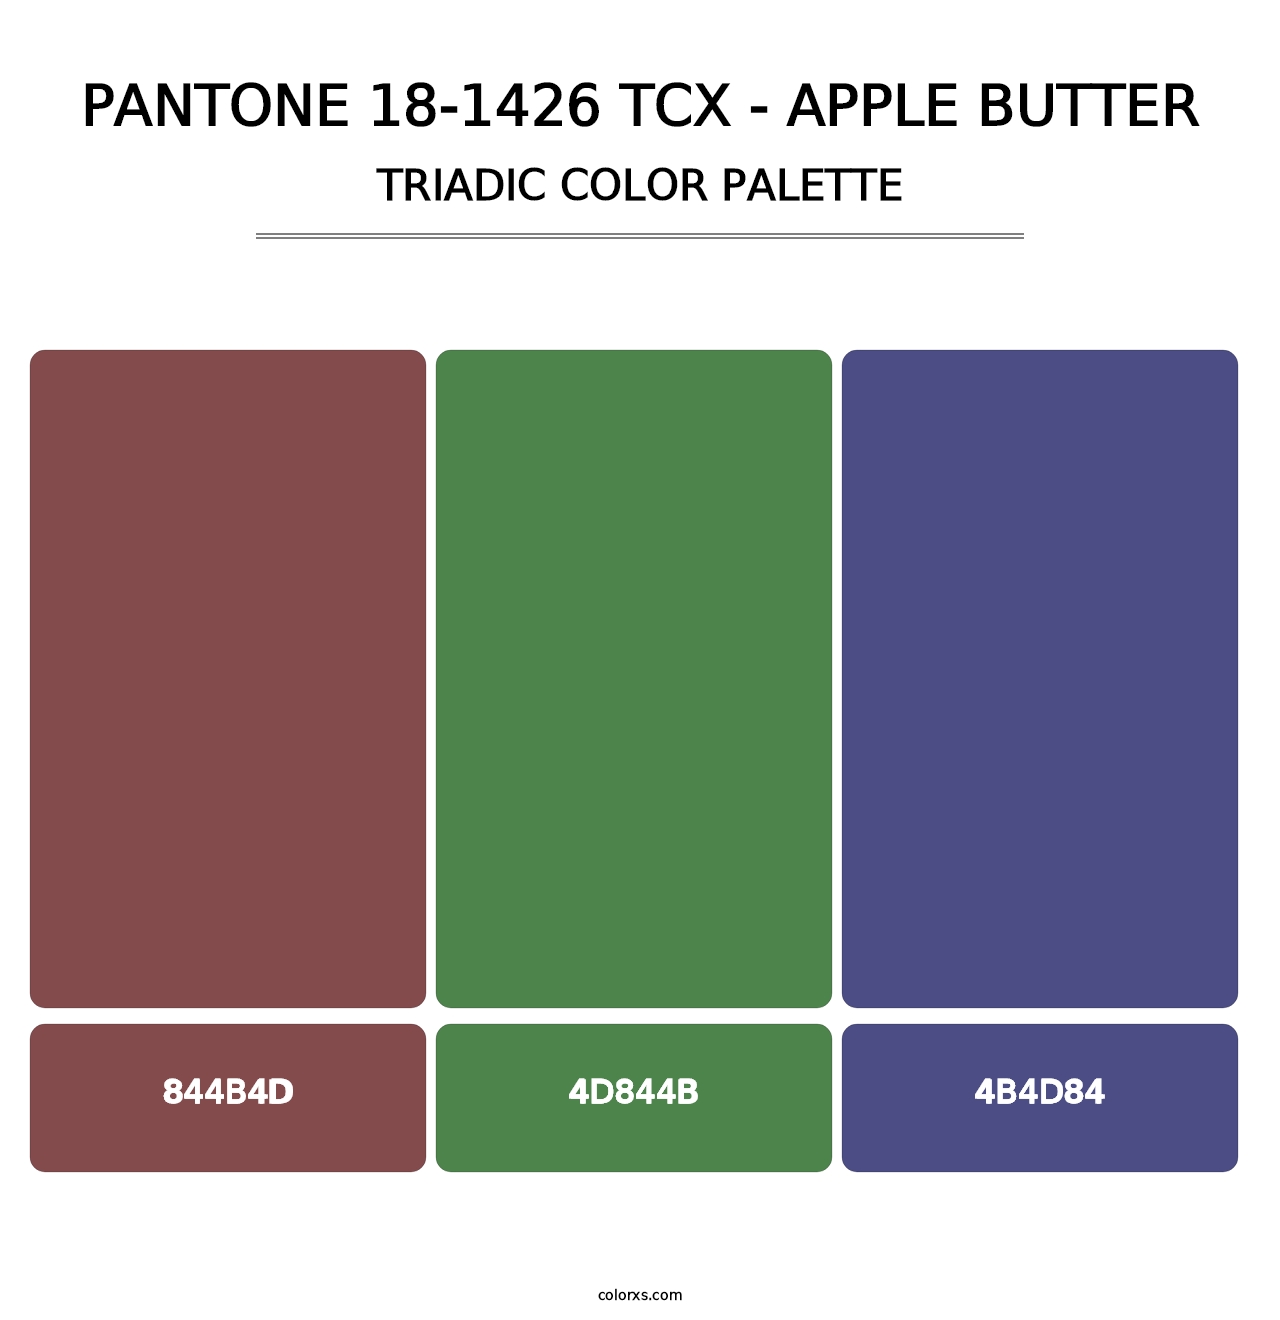 PANTONE 18-1426 TCX - Apple Butter - Triadic Color Palette